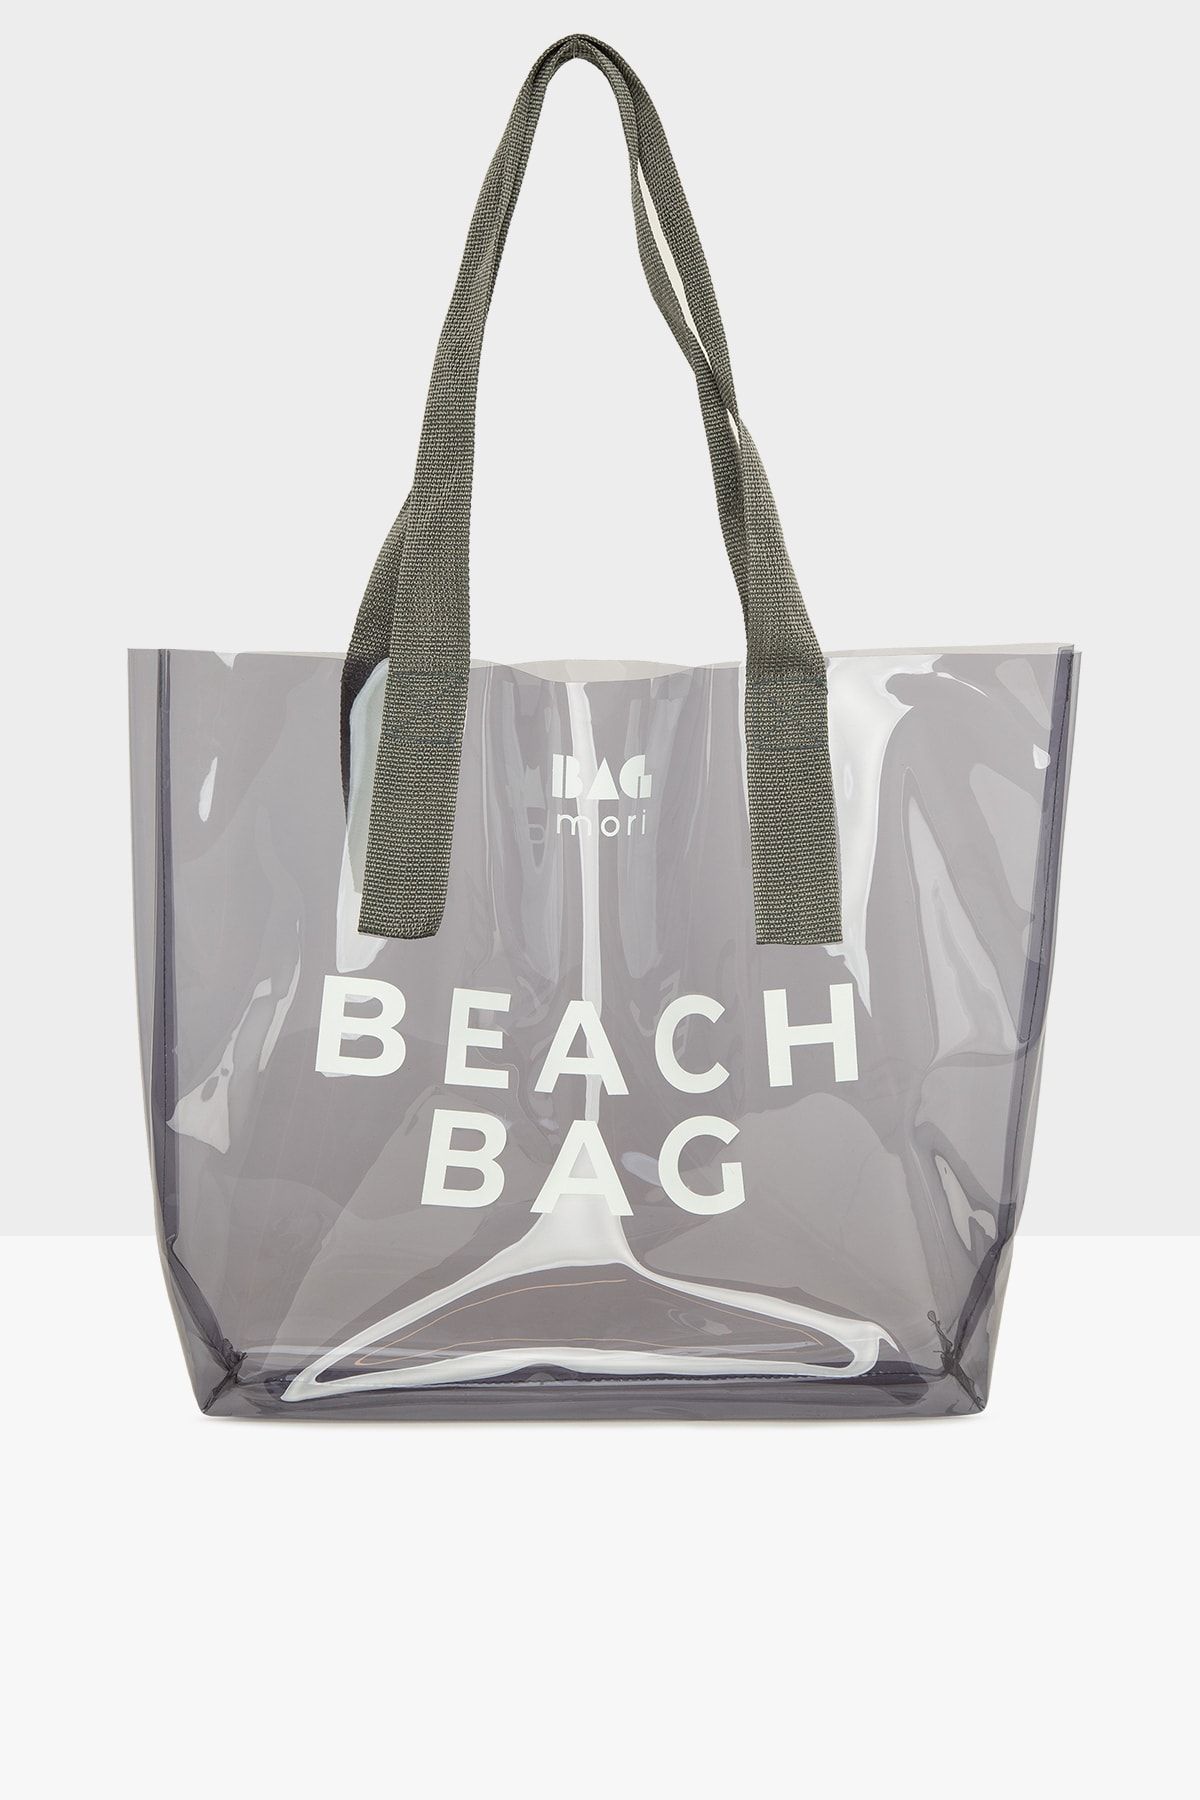 Bagmori Gri Kadın Beach Bag Baskılı Şeffaf Plaj Çantası M000007257